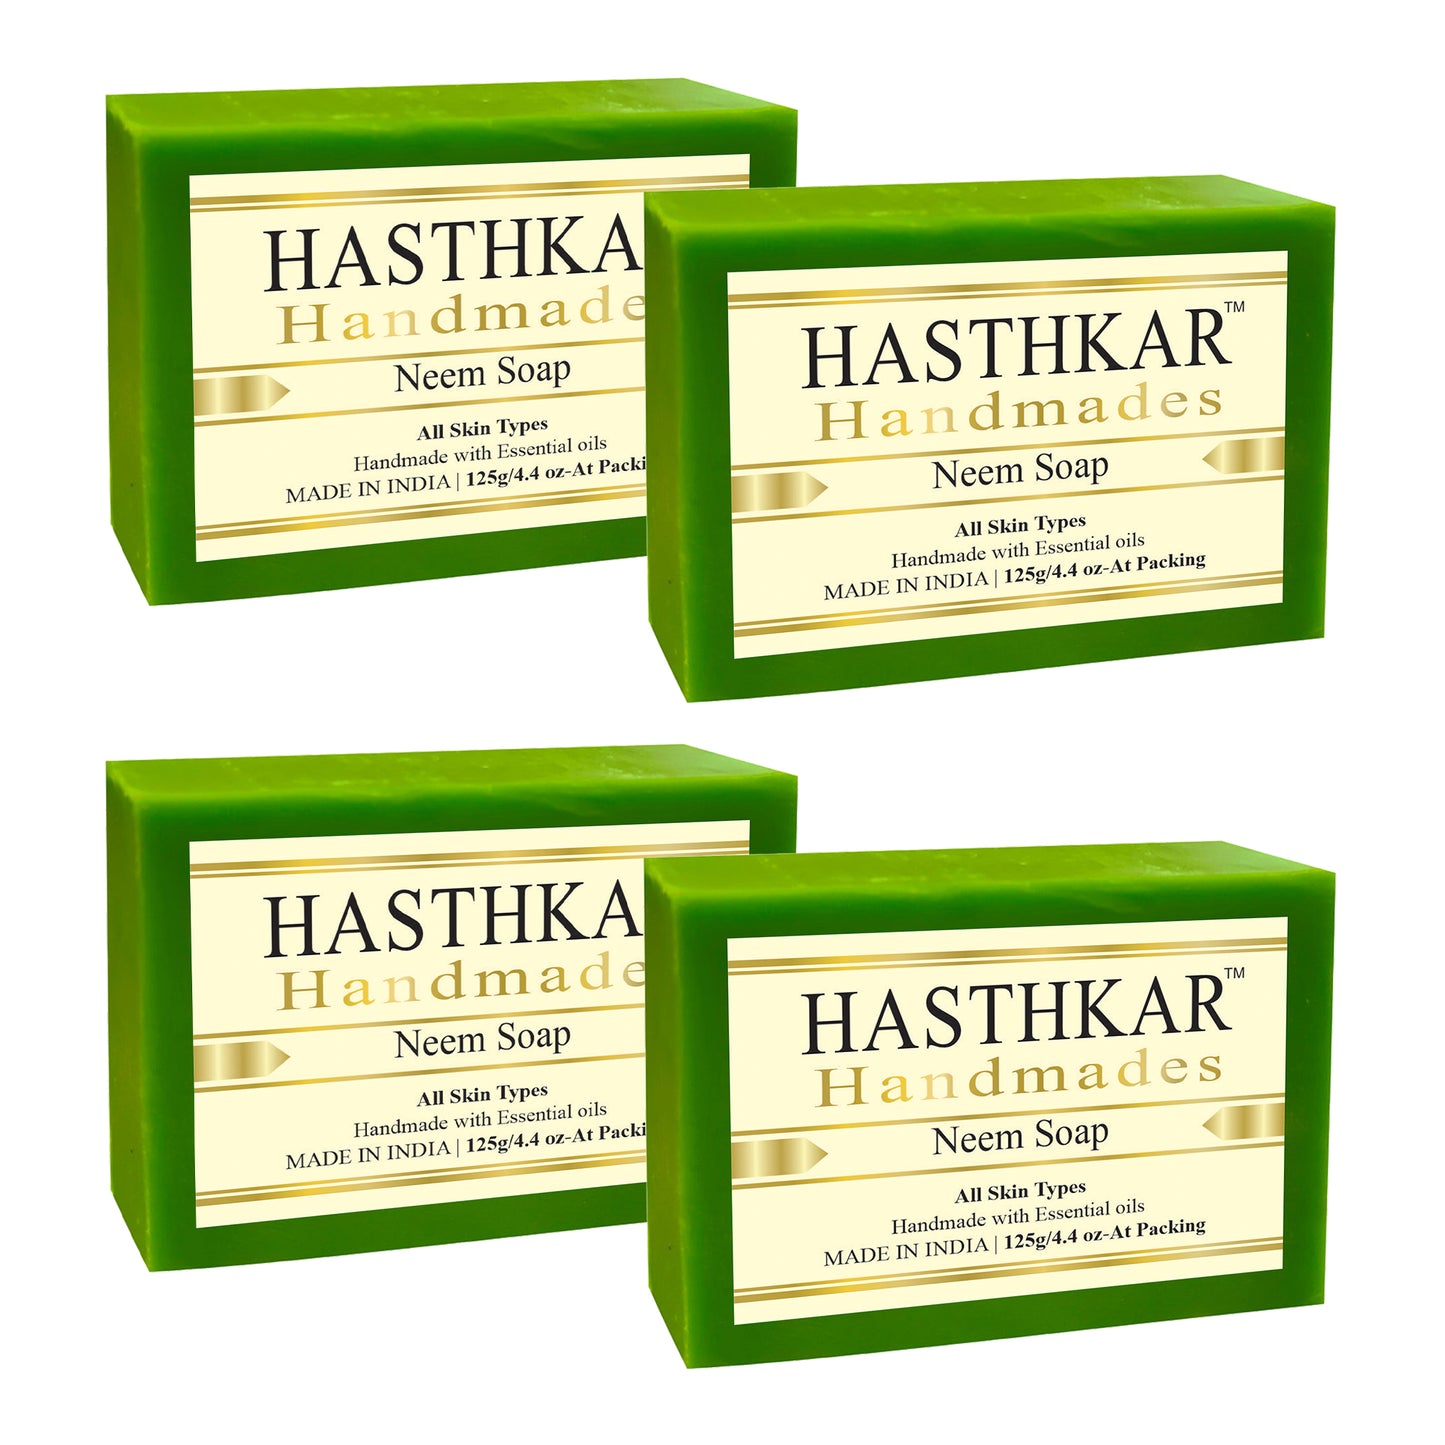 Hasthkar handmades neem bathing soap men women pack of 4